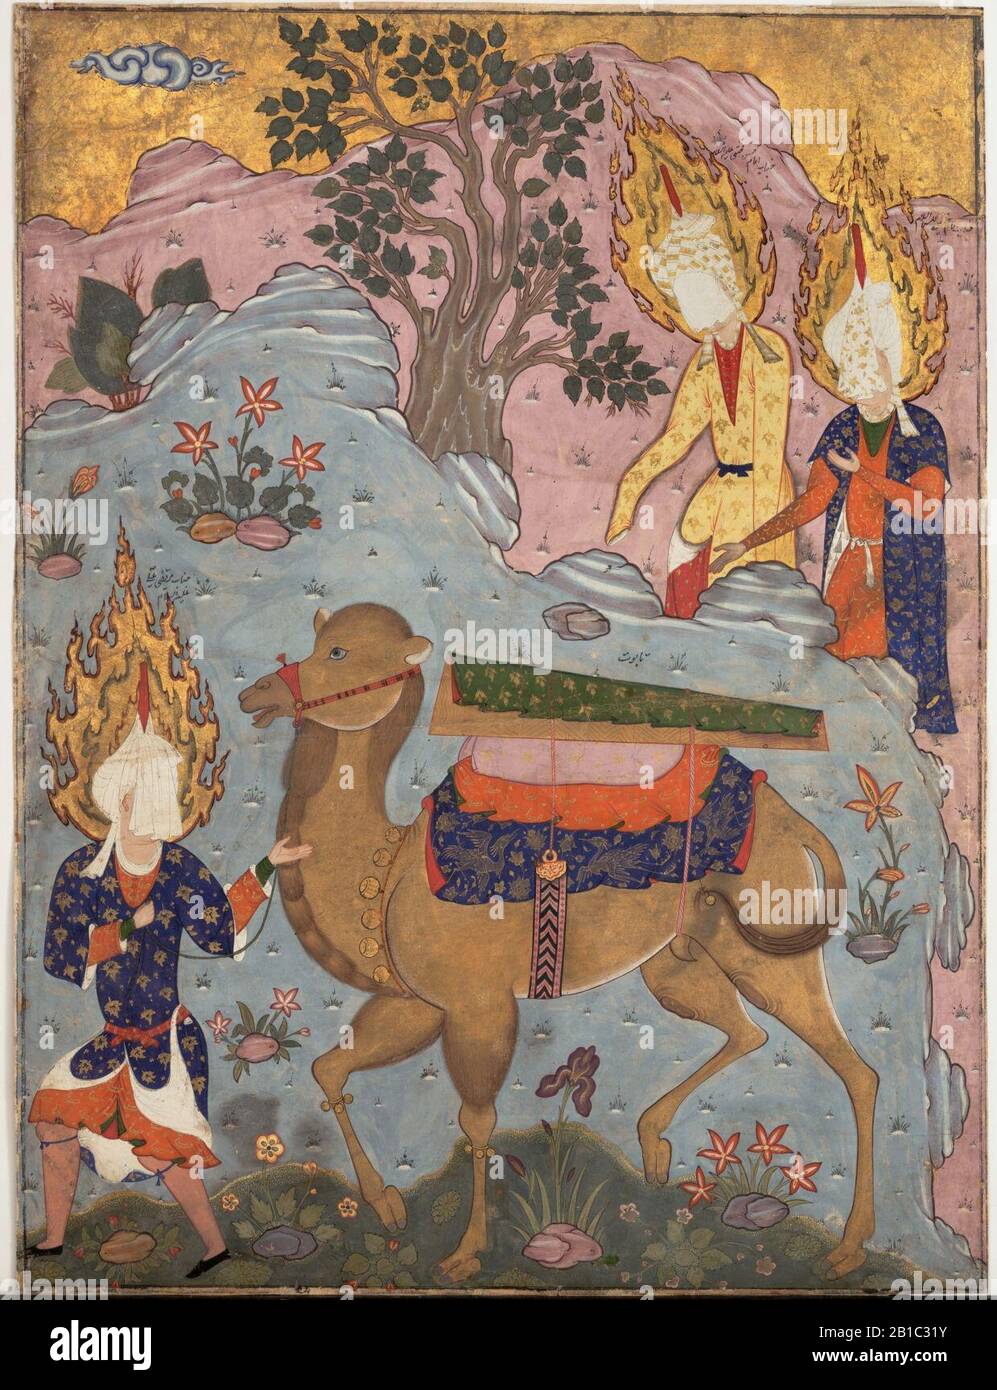 Beerdigung von Fatima, Folio aus einem Falnama (Buch der Divination) Mitte der 1550er-Anfang der 1560er Jahre Iran, Tabriz. Metropolitan Mus. N-Y. Stockfoto